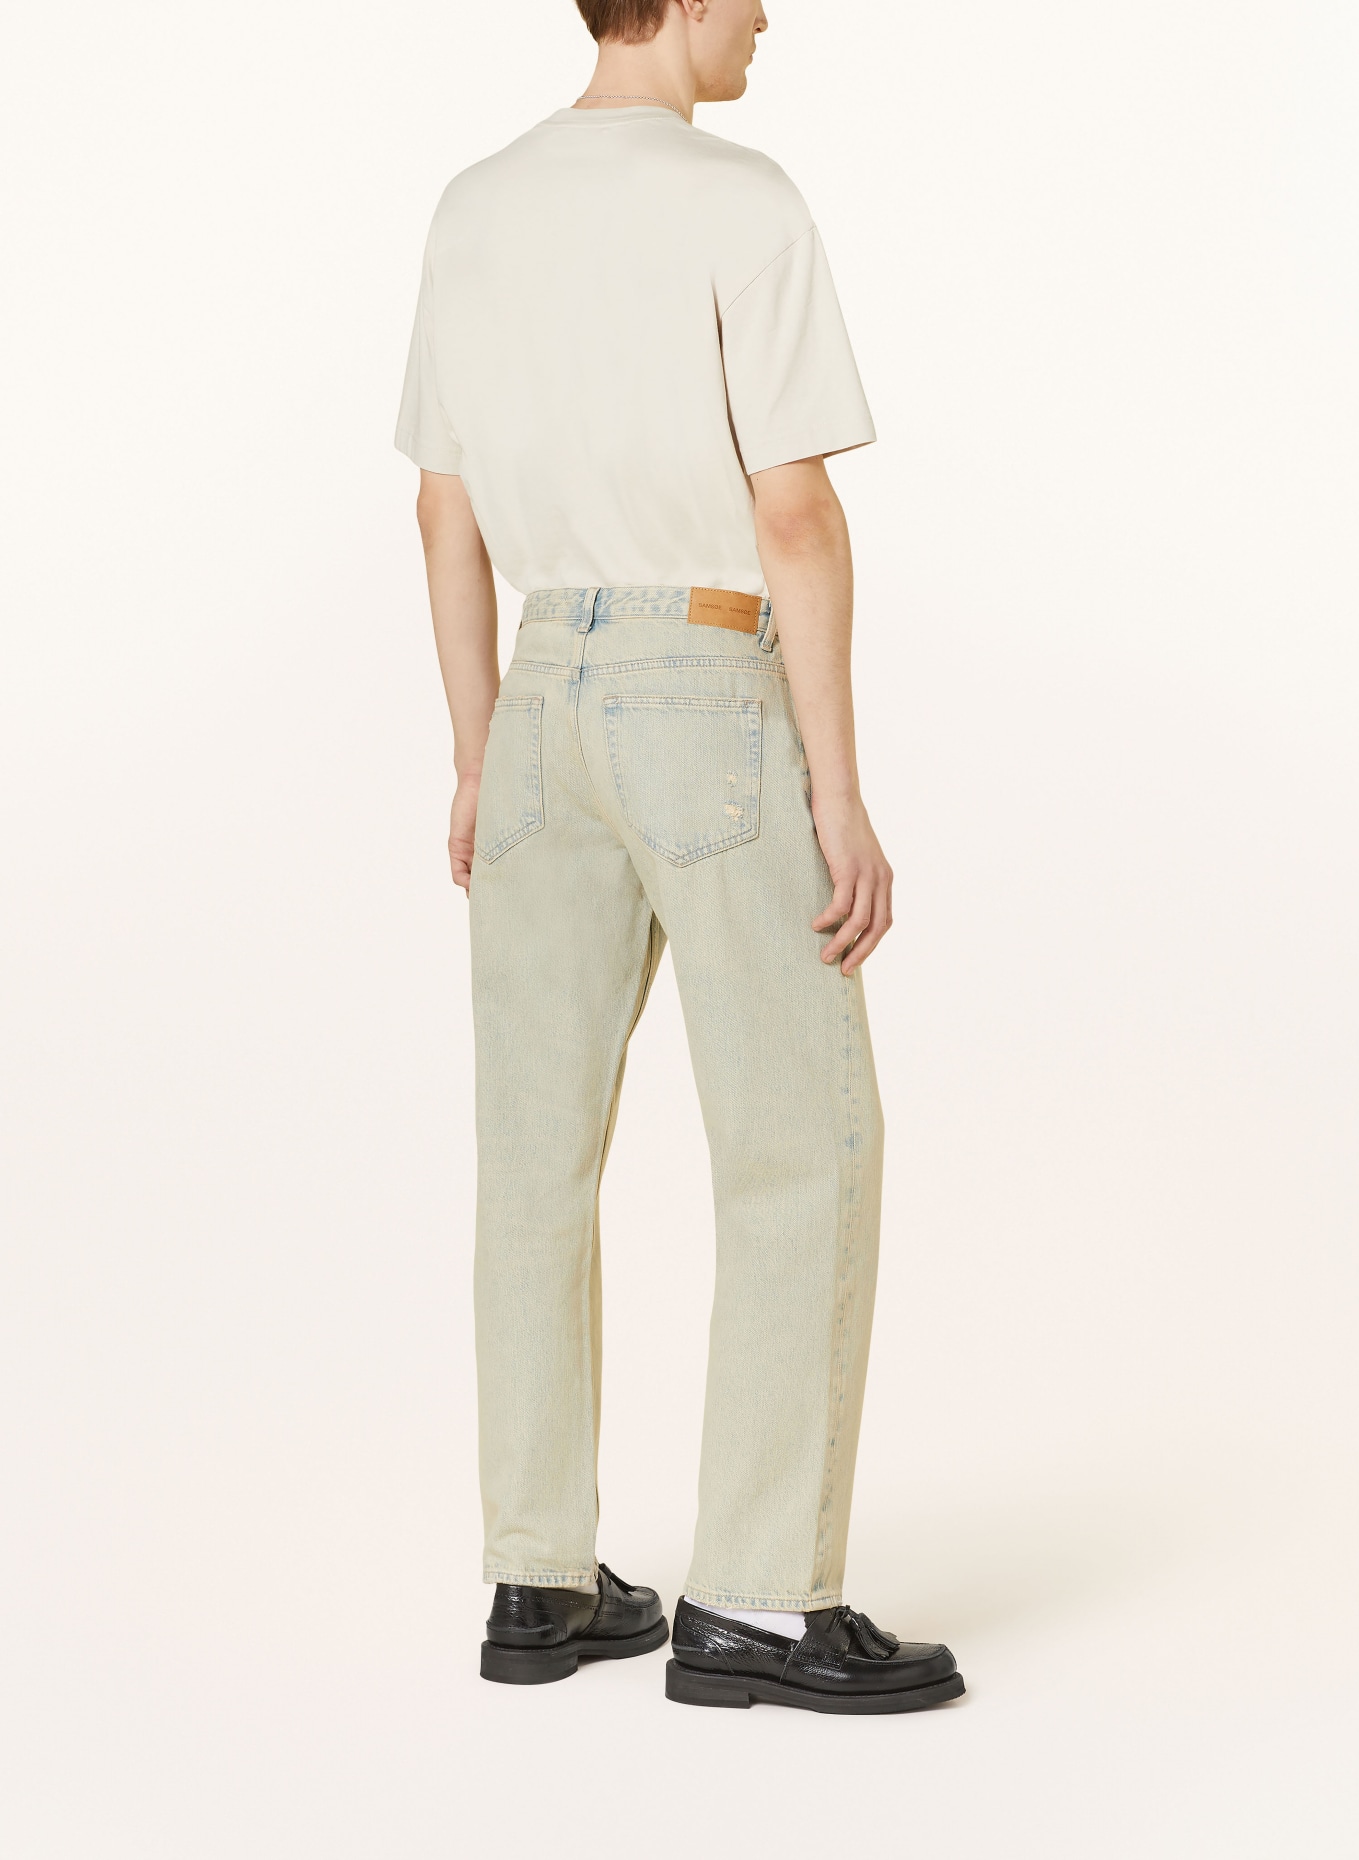 SAMSØE  SAMSØE Jeans EDDIE regular fit, Color: CLR001370 Khaki dust (Image 3)